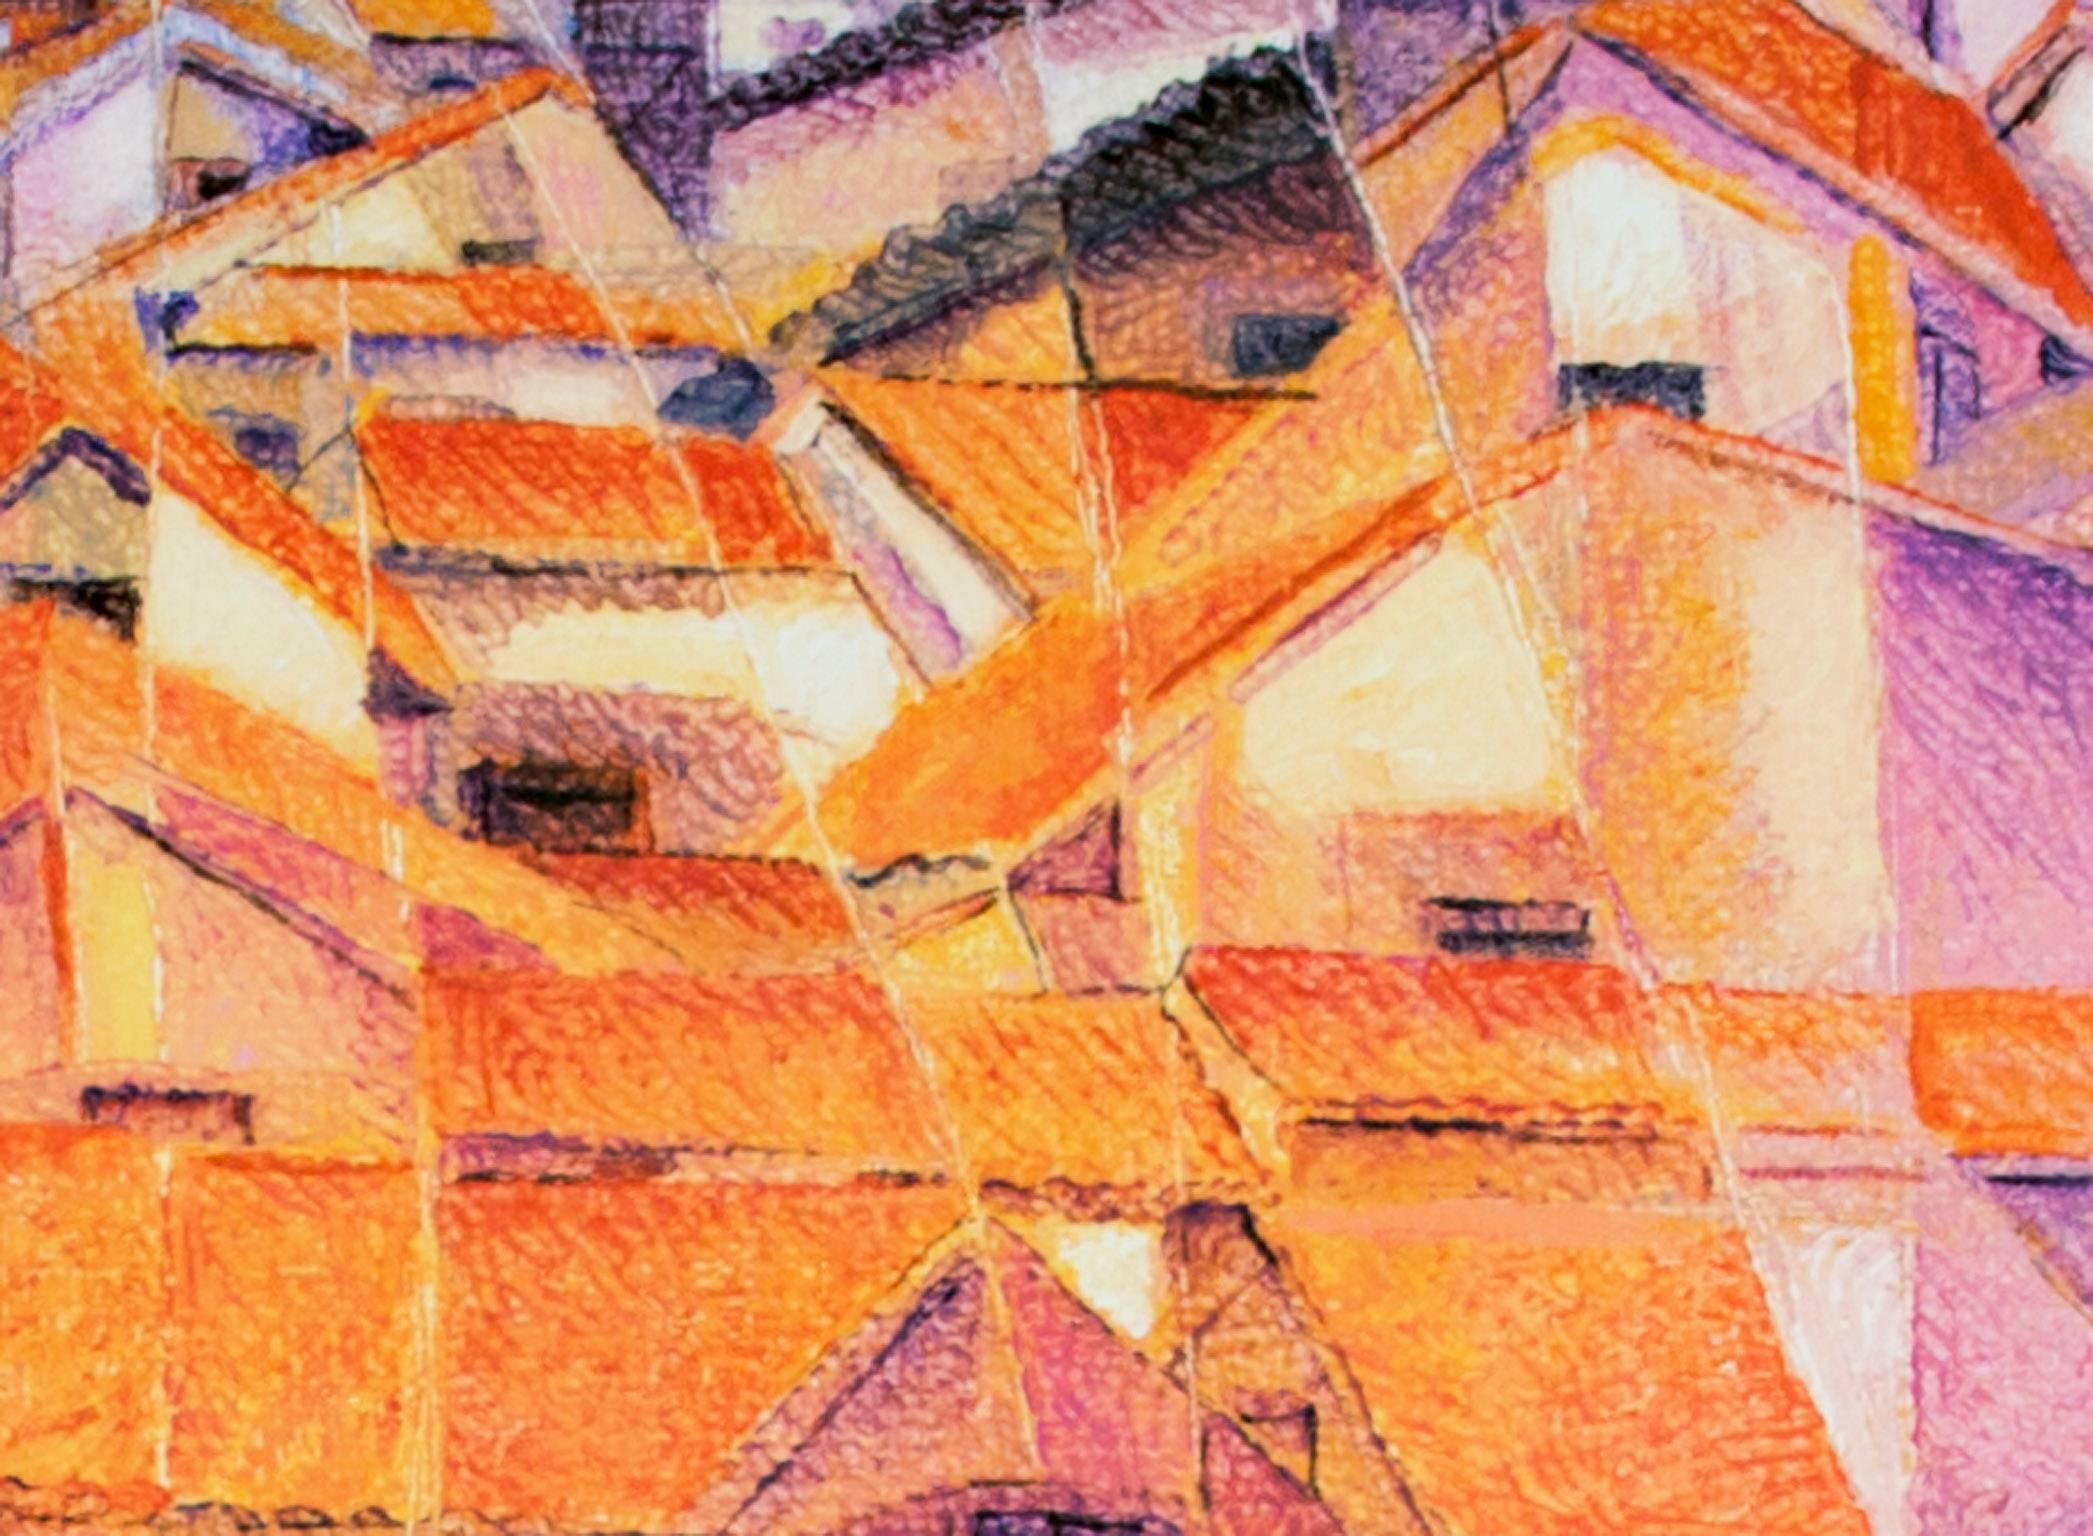 Ein Giclee-Druck auf Leinwand des peruanischen Künstlers Ernesto Gutierrez, der an die kubistische Bewegung erinnert.

Ernesto kam Anfang der 1970er Jahre mit einem Fullbright-Stipendium nach Milwaukee, um an der University of Wisconsin-Milwaukee